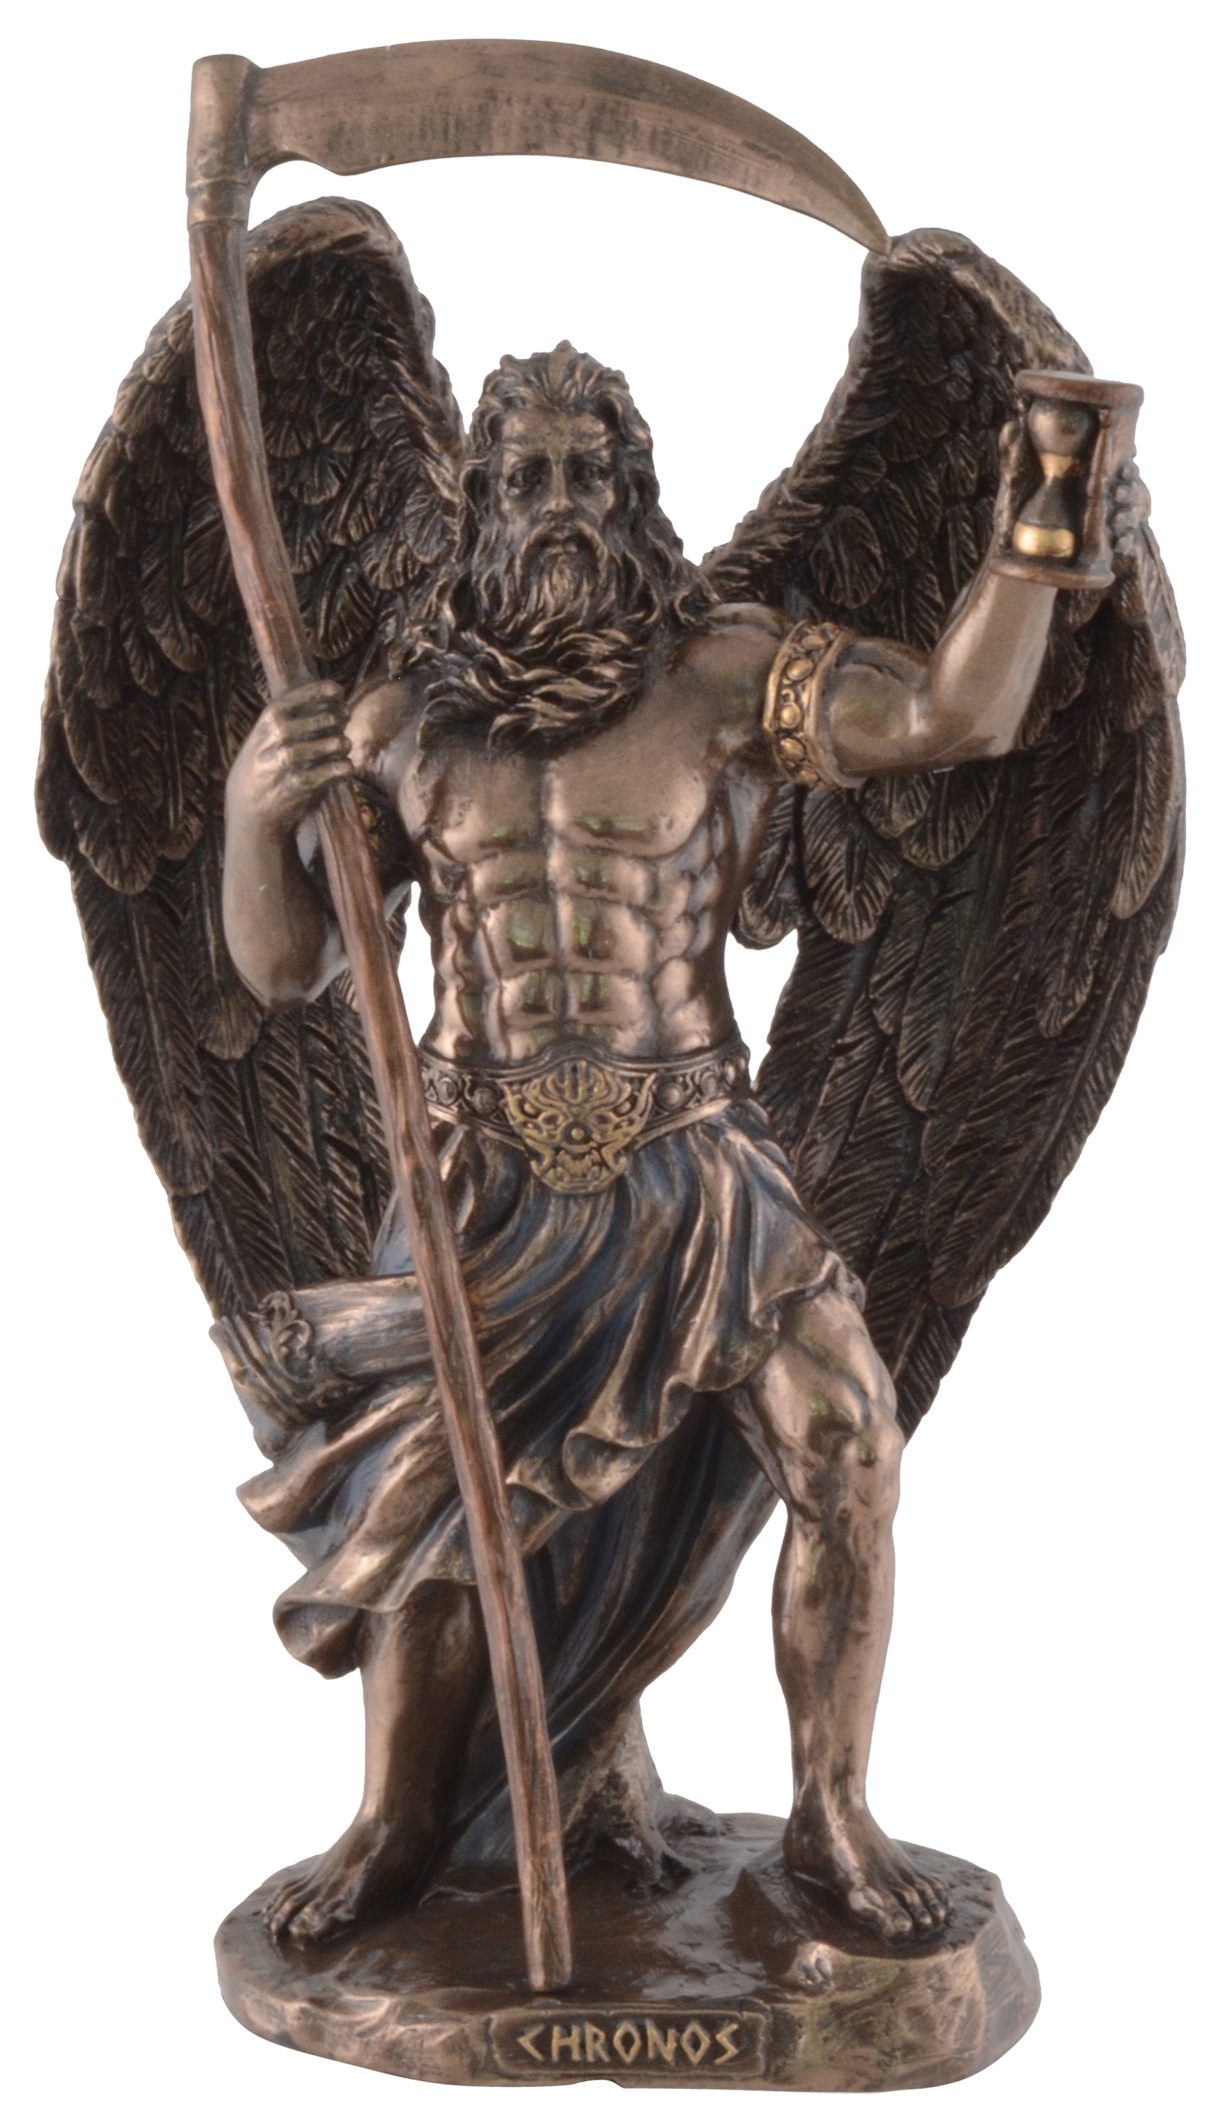 Vogler direct Gmbh Dekofigur Griechischer Gott Kronos, Veronesedesign, bronziert/coloriert, Größe: L/B/H ca. 11x8x19cm